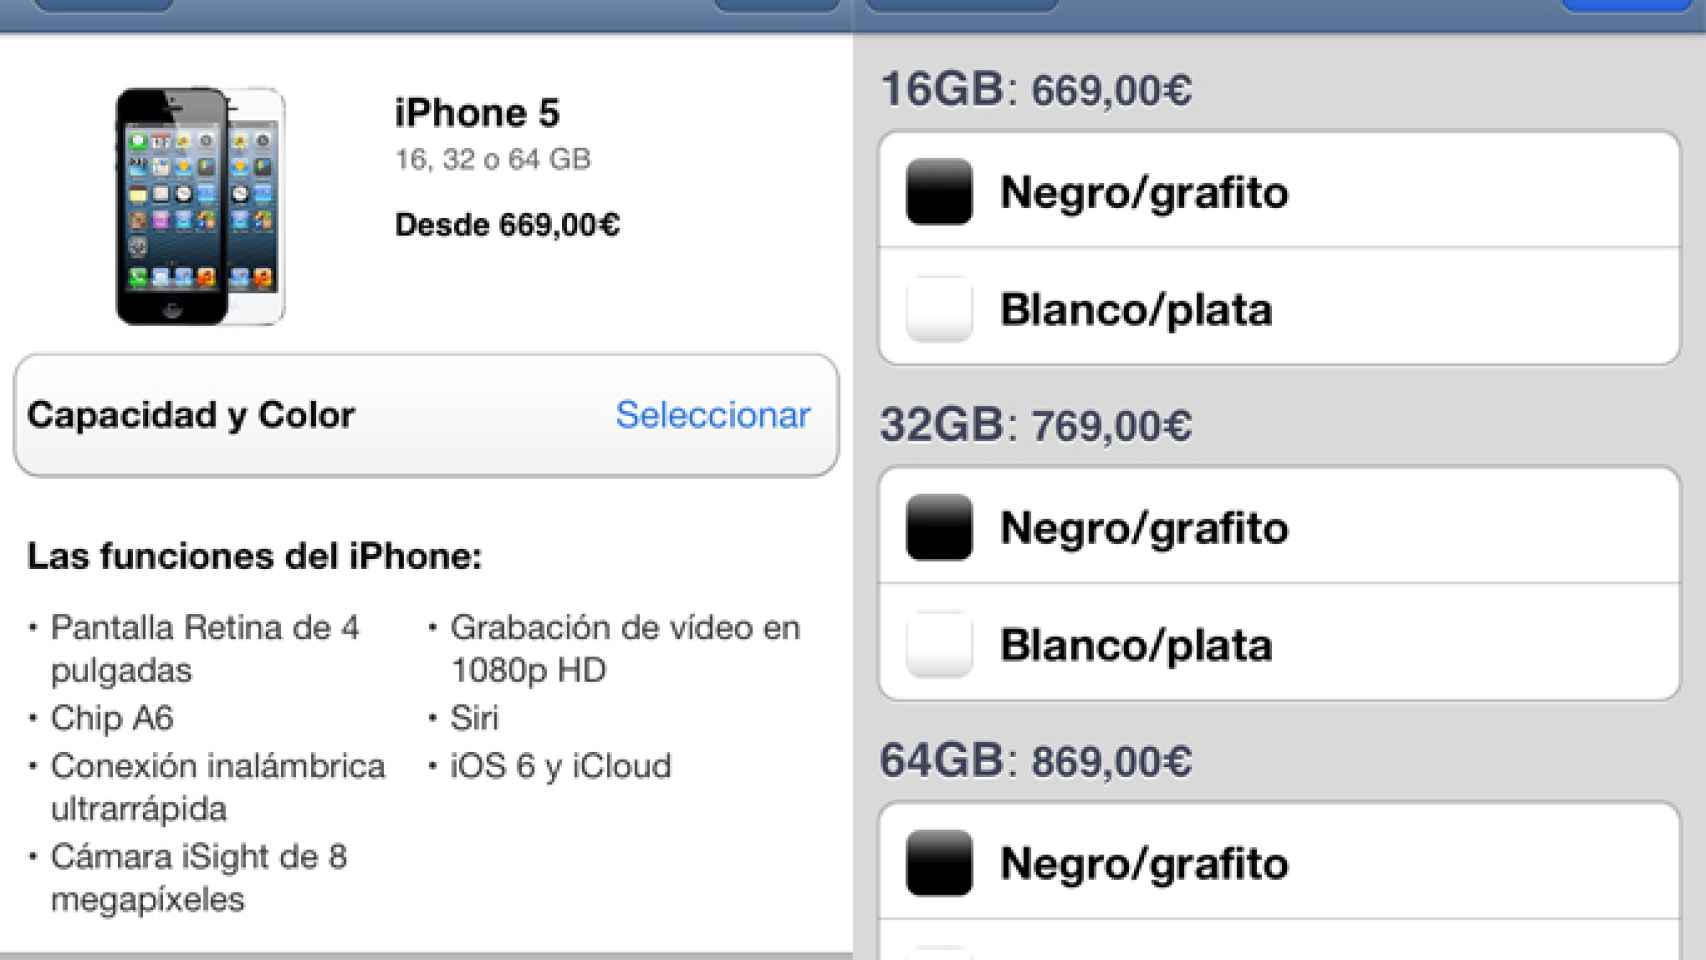 precios-iphone5-espana